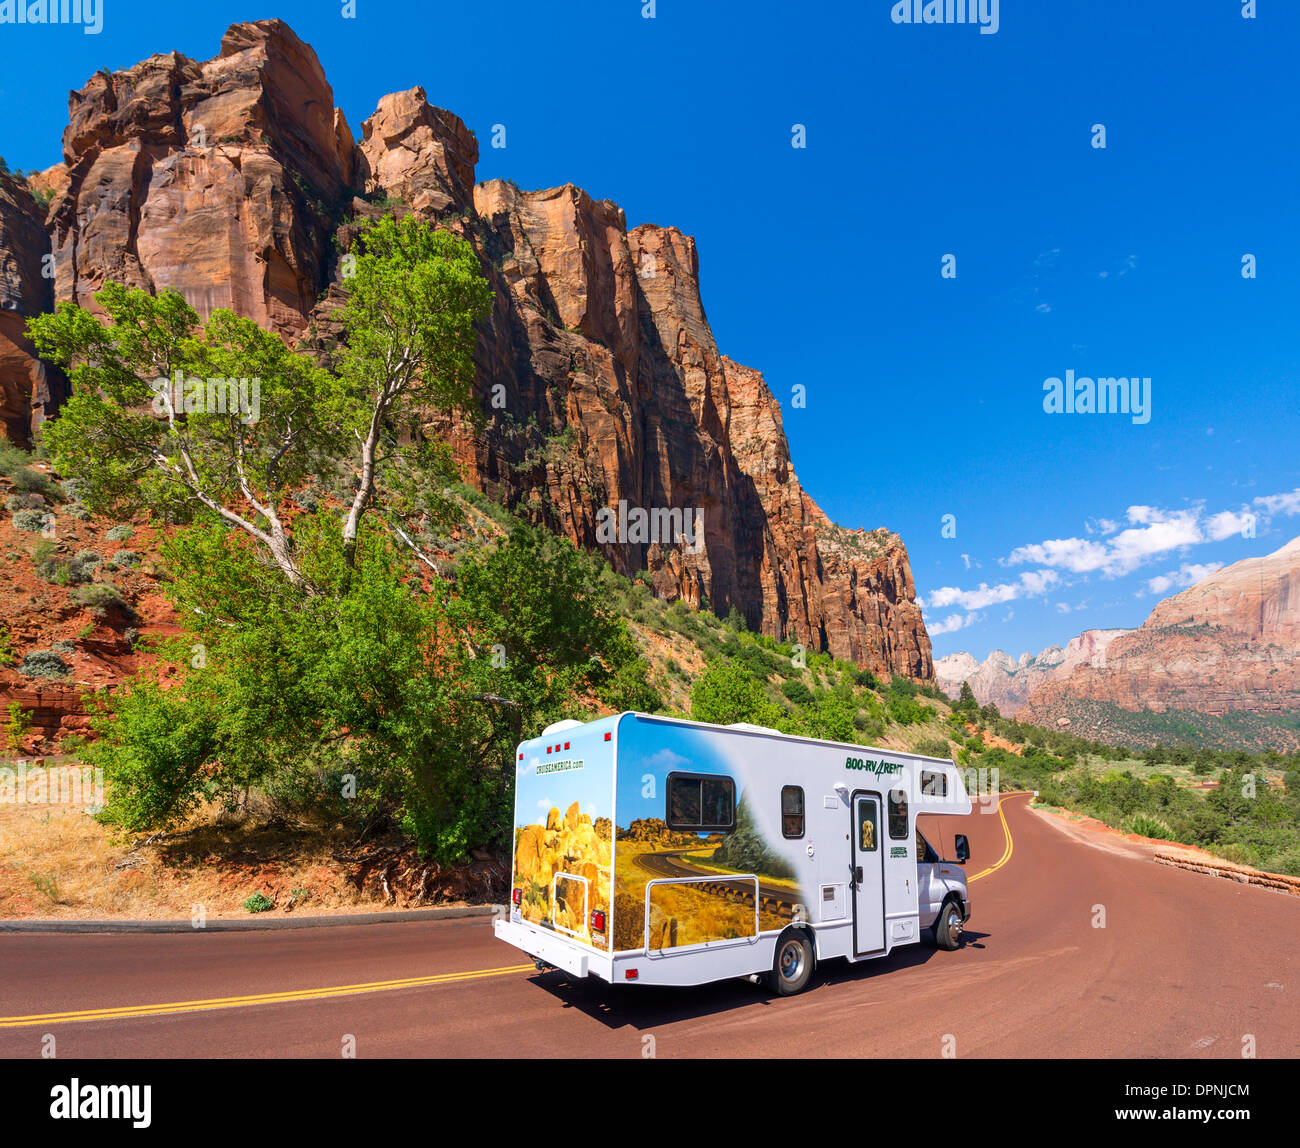 Location de Cruiseamerica.com véhicules de camping dans le parc national de Zion sur la route de Zion-Mount Carmel (SR 9), parc national de Zion, Utah, États-Unis Banque D'Images